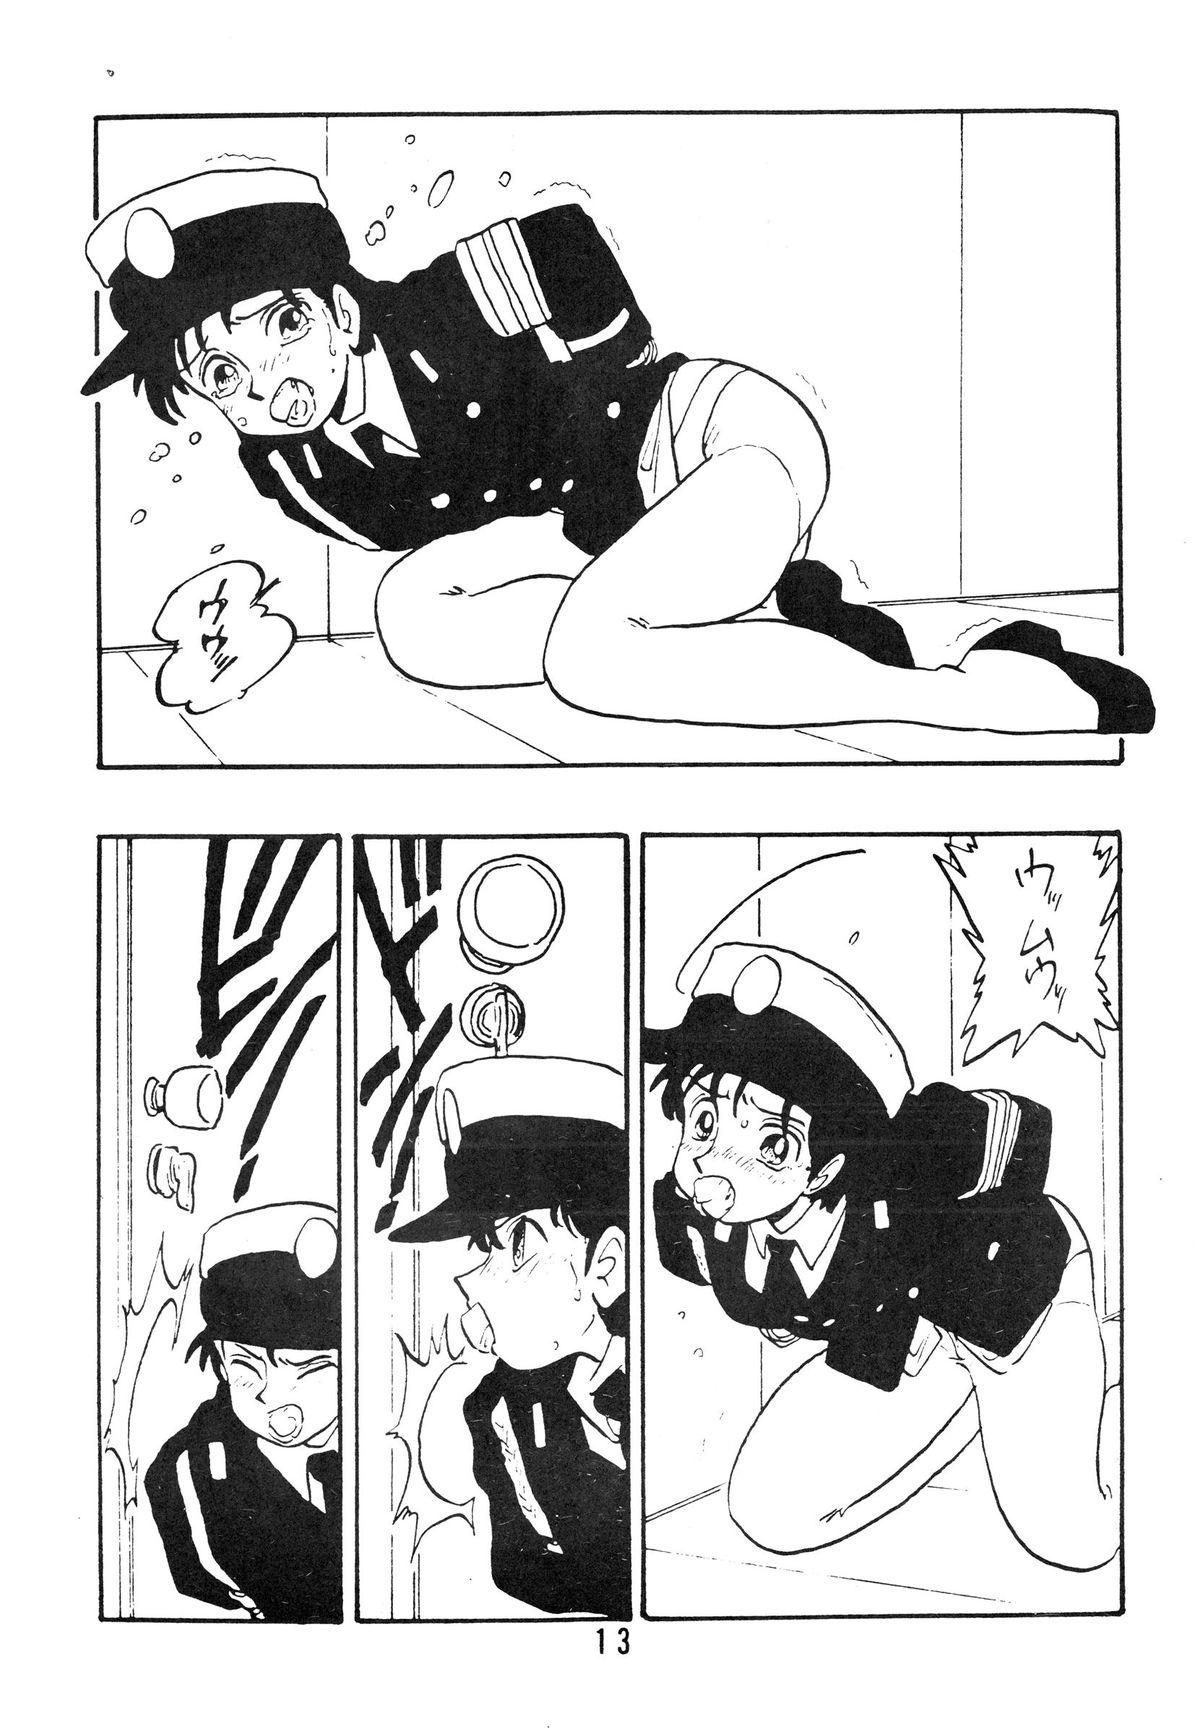 Pegging Rei REIKO Ko Nudes - Page 13